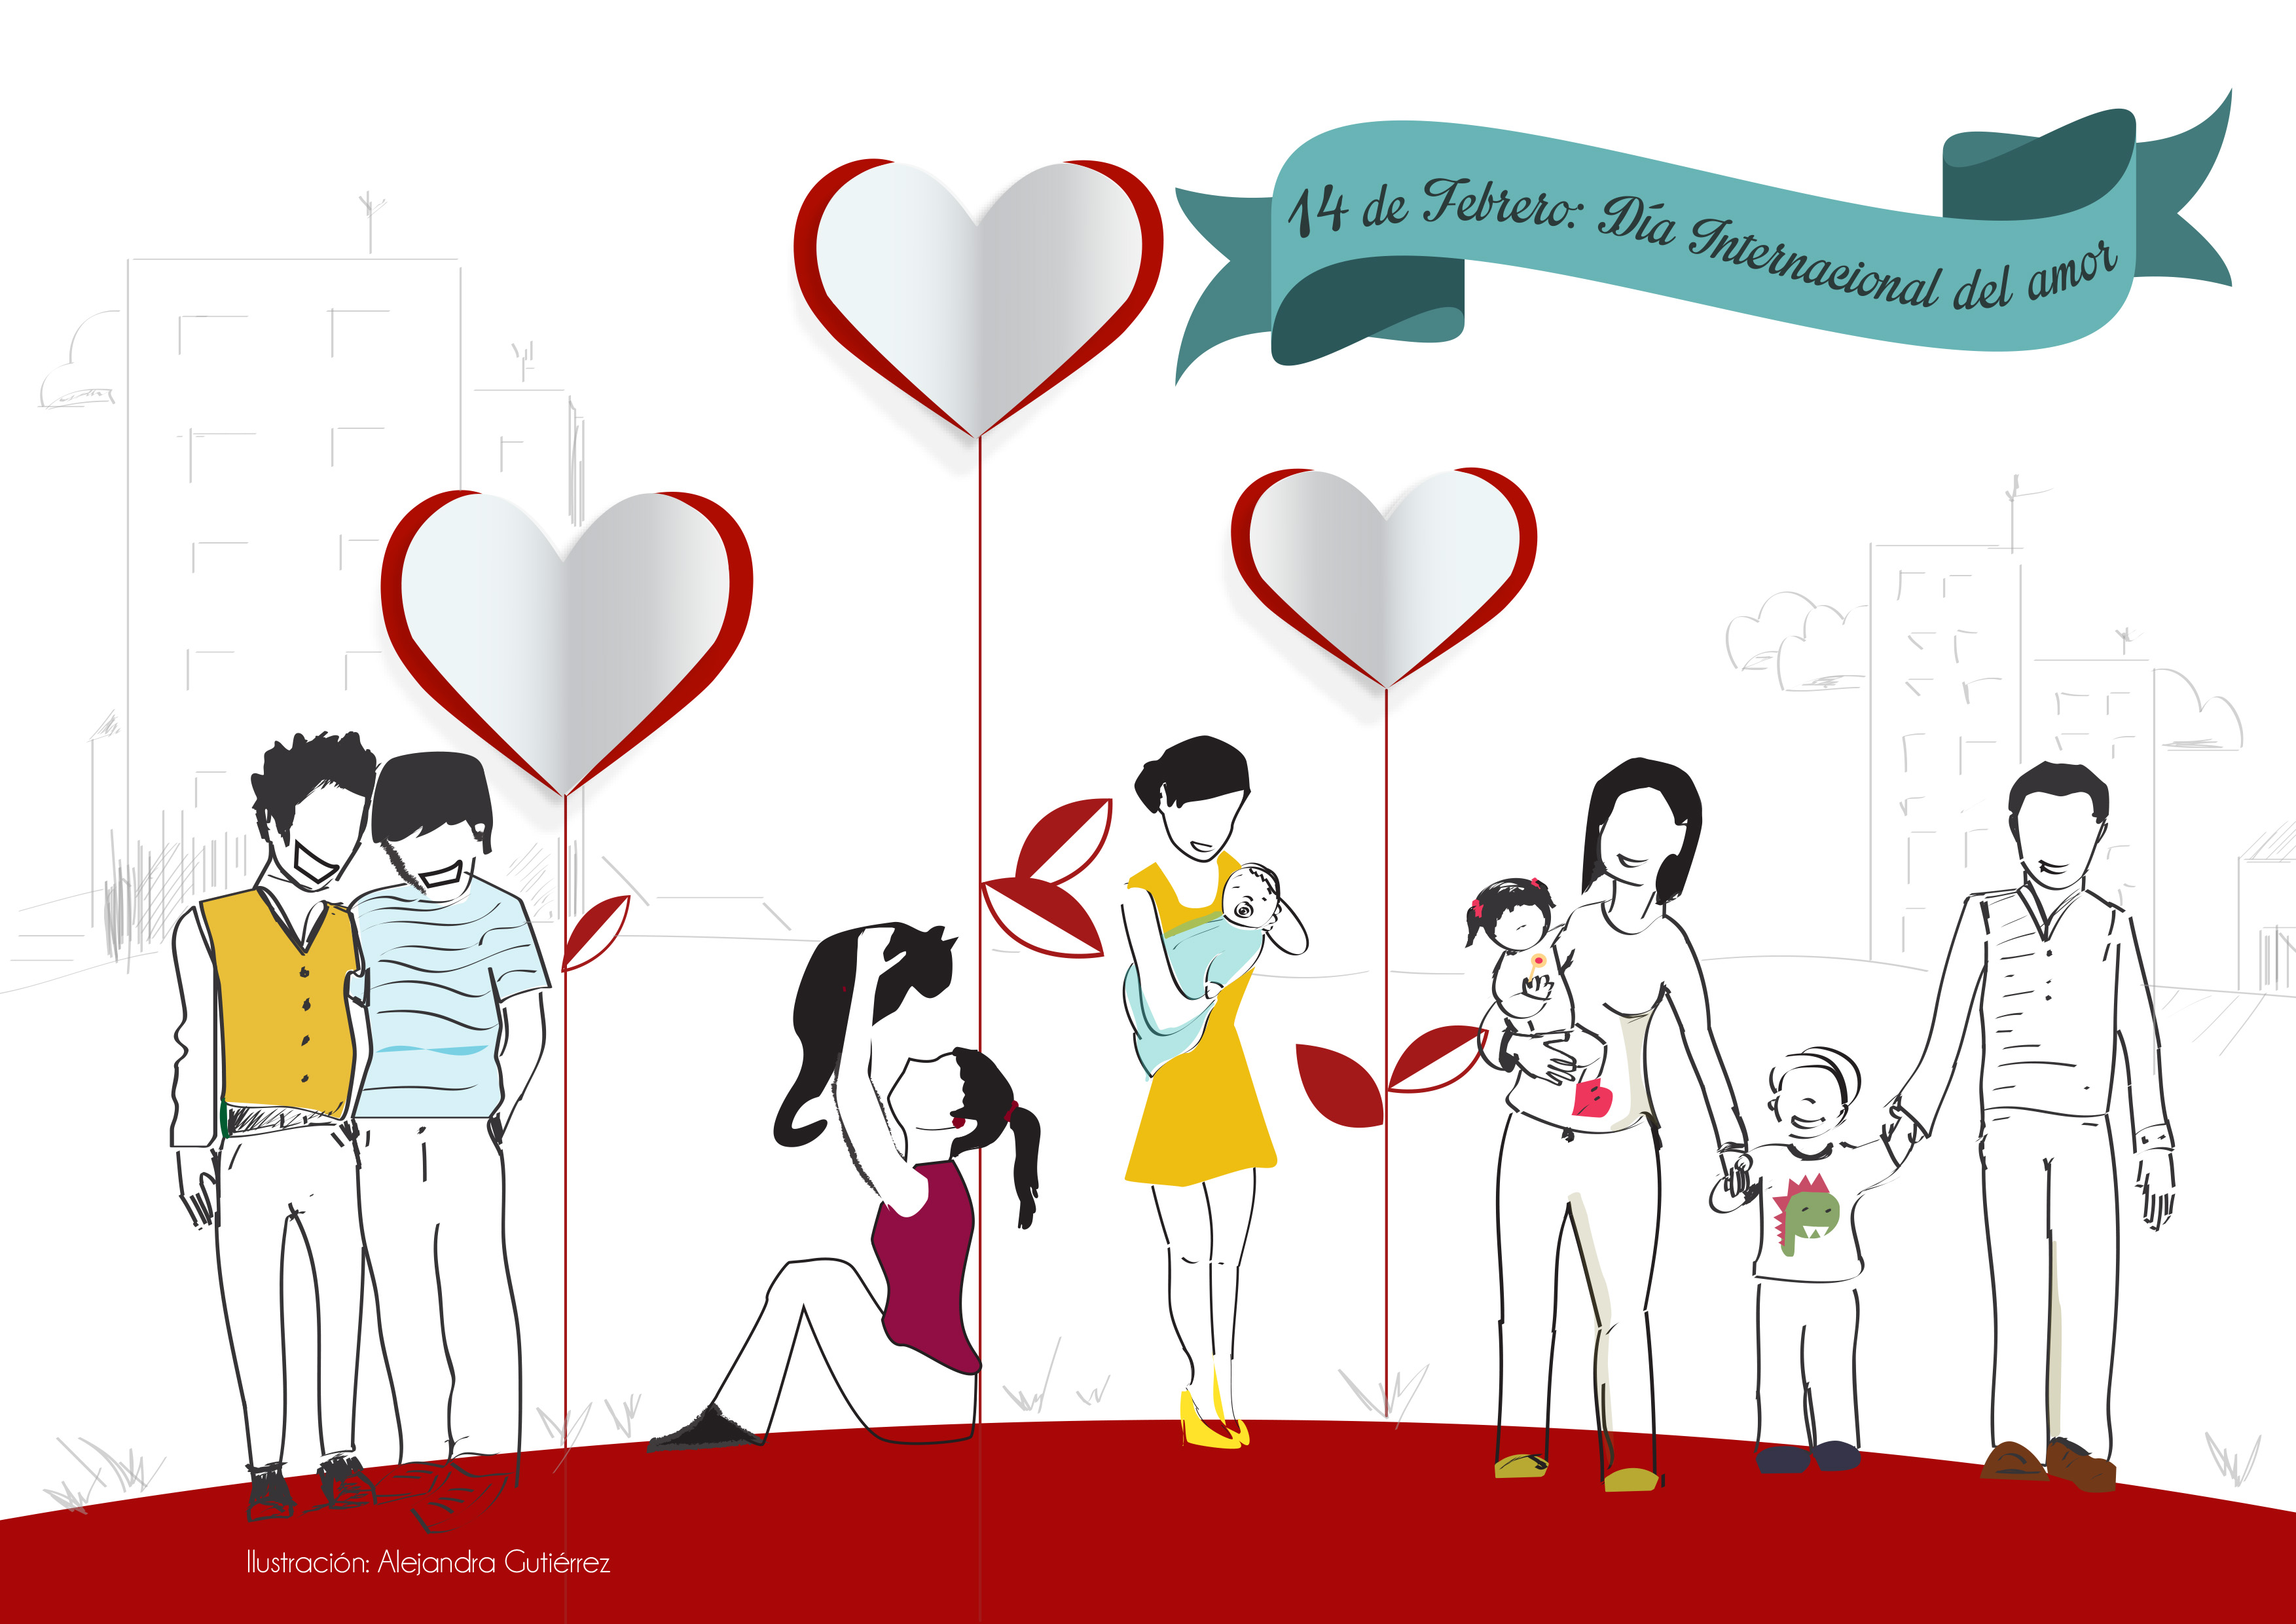 14 de febrero: Día internacional del amor